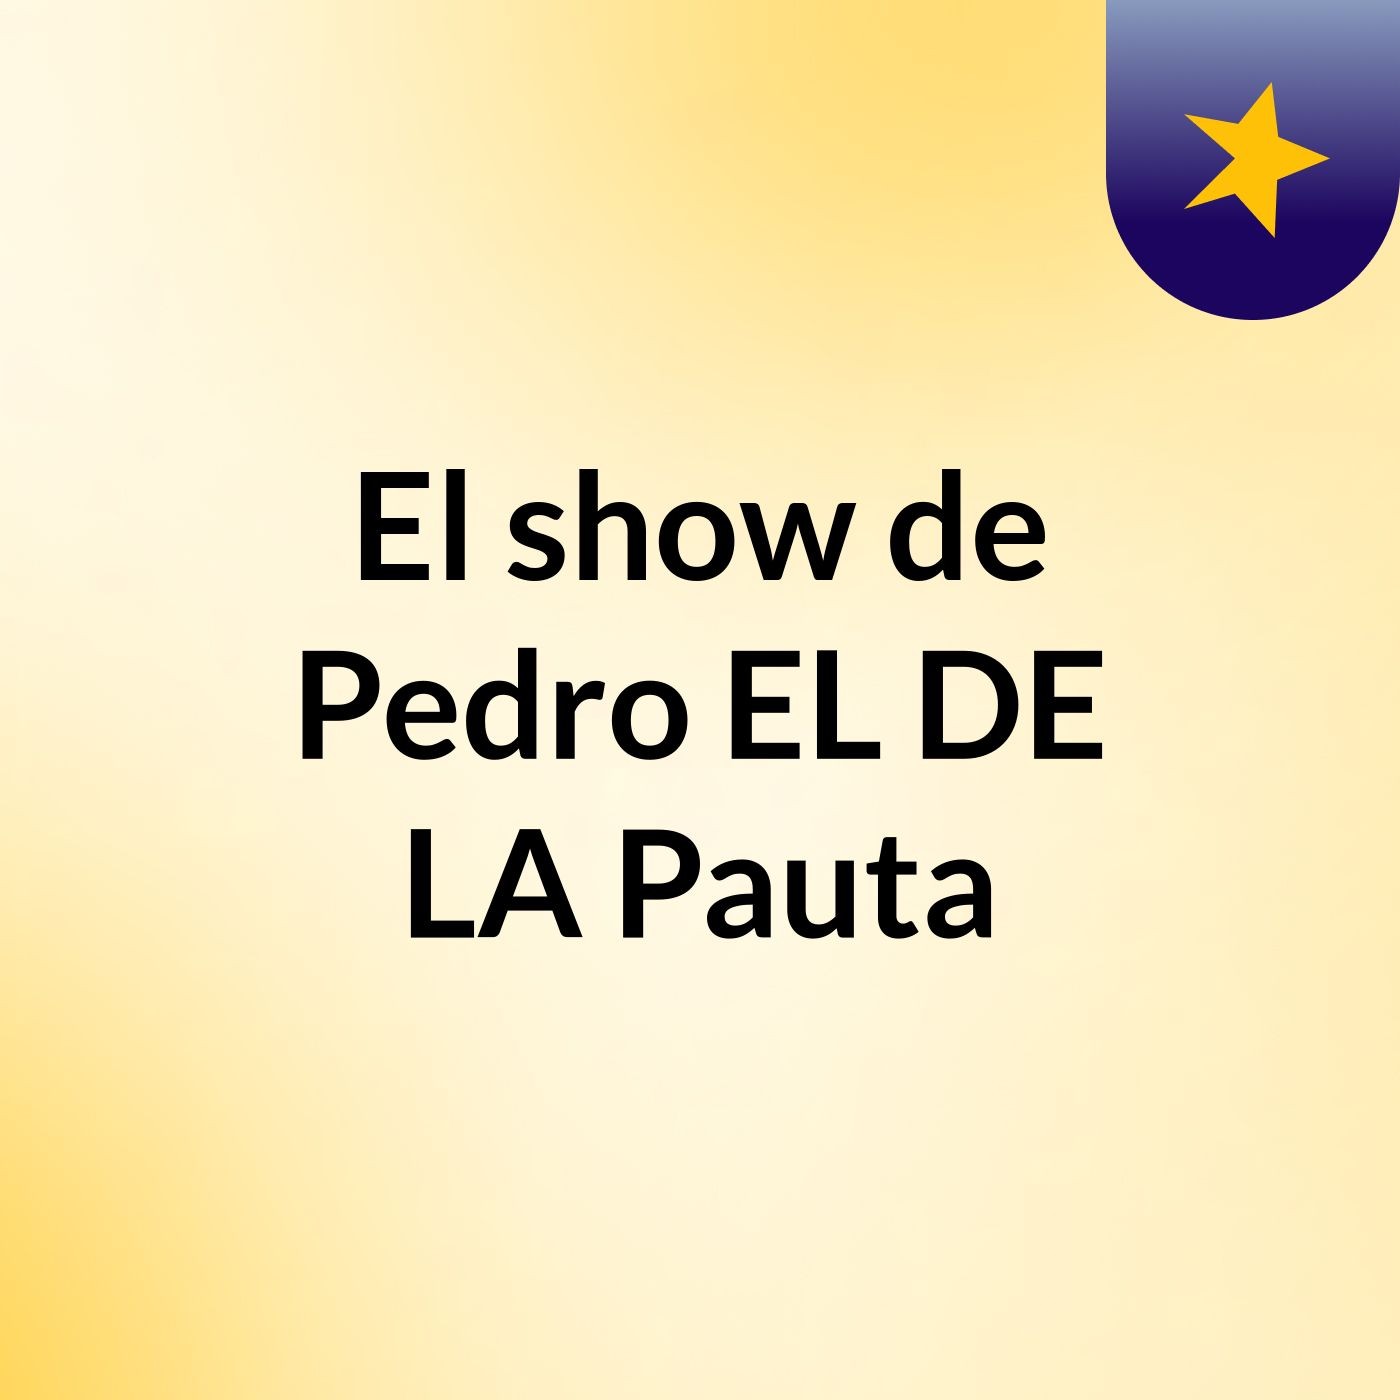 El show de Pedro EL DE LA Pauta